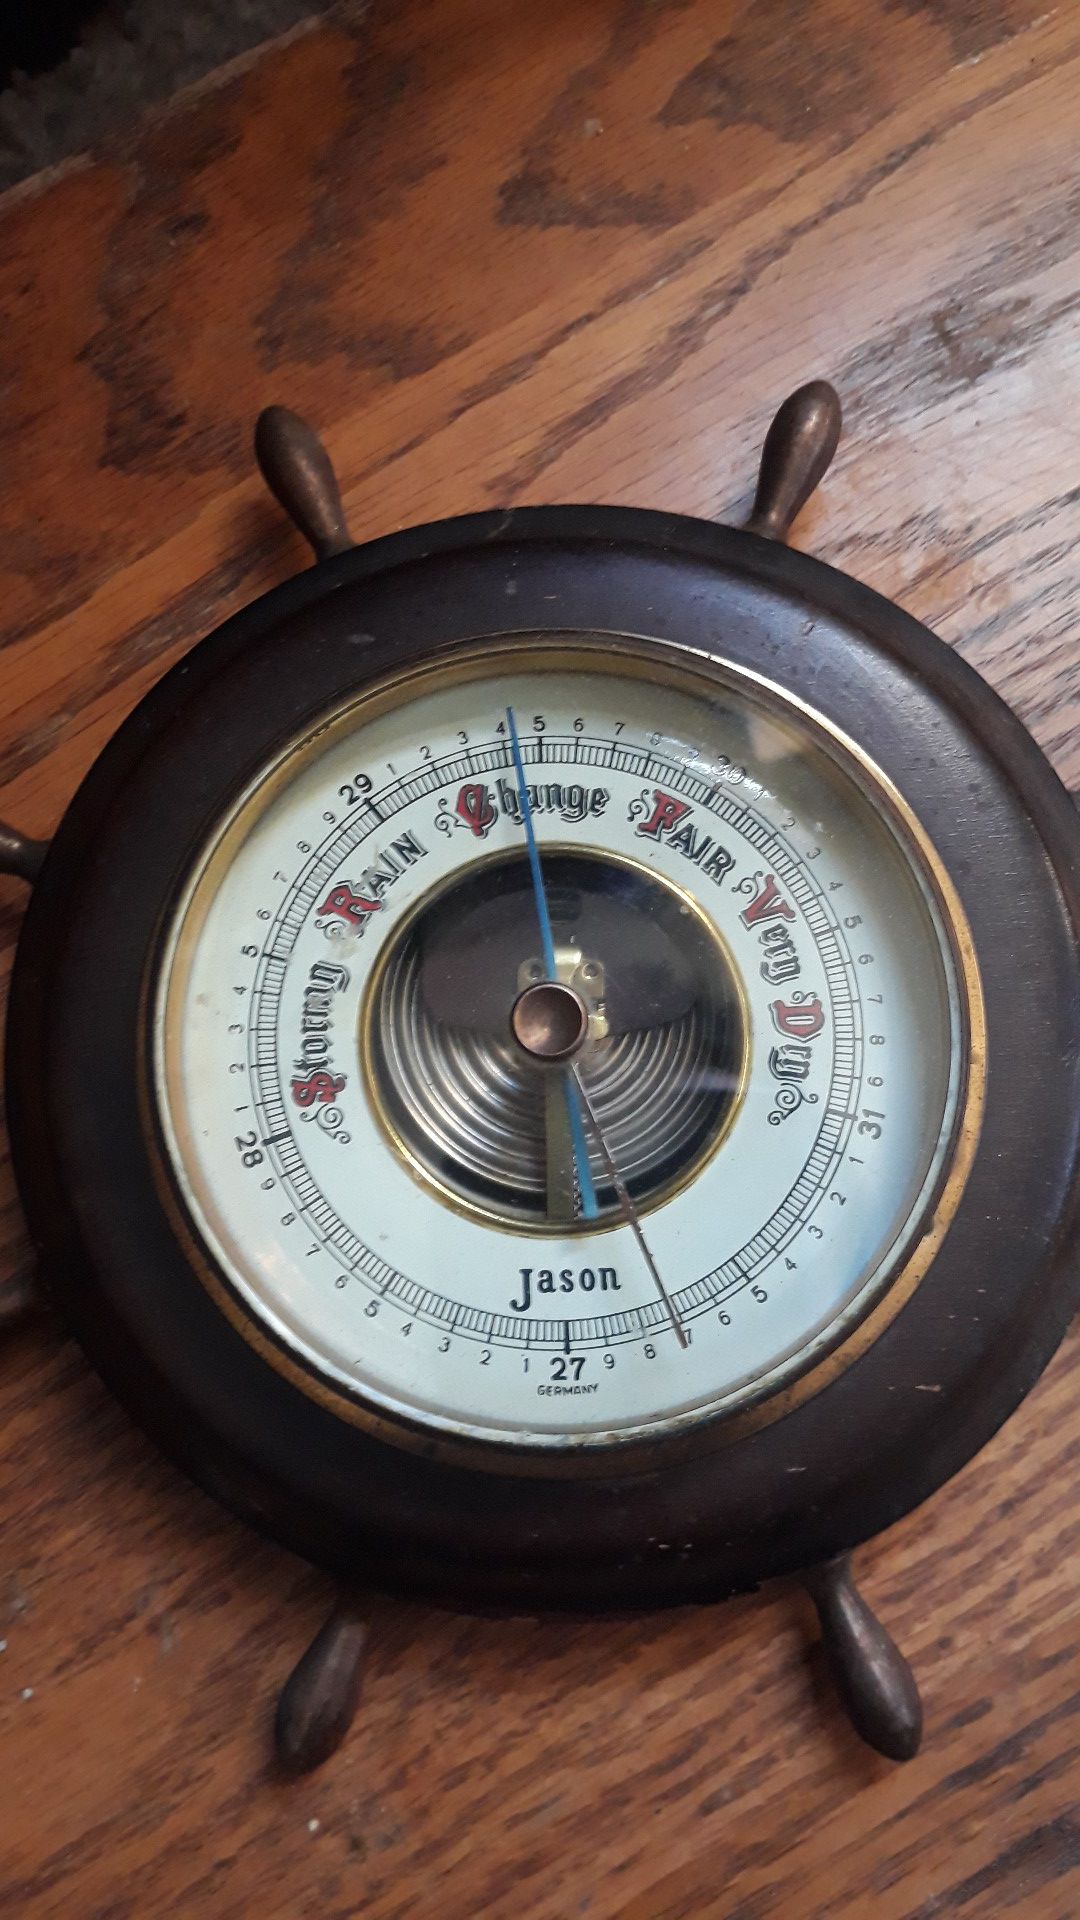 Vintage 8 Spoke Jason Barometer